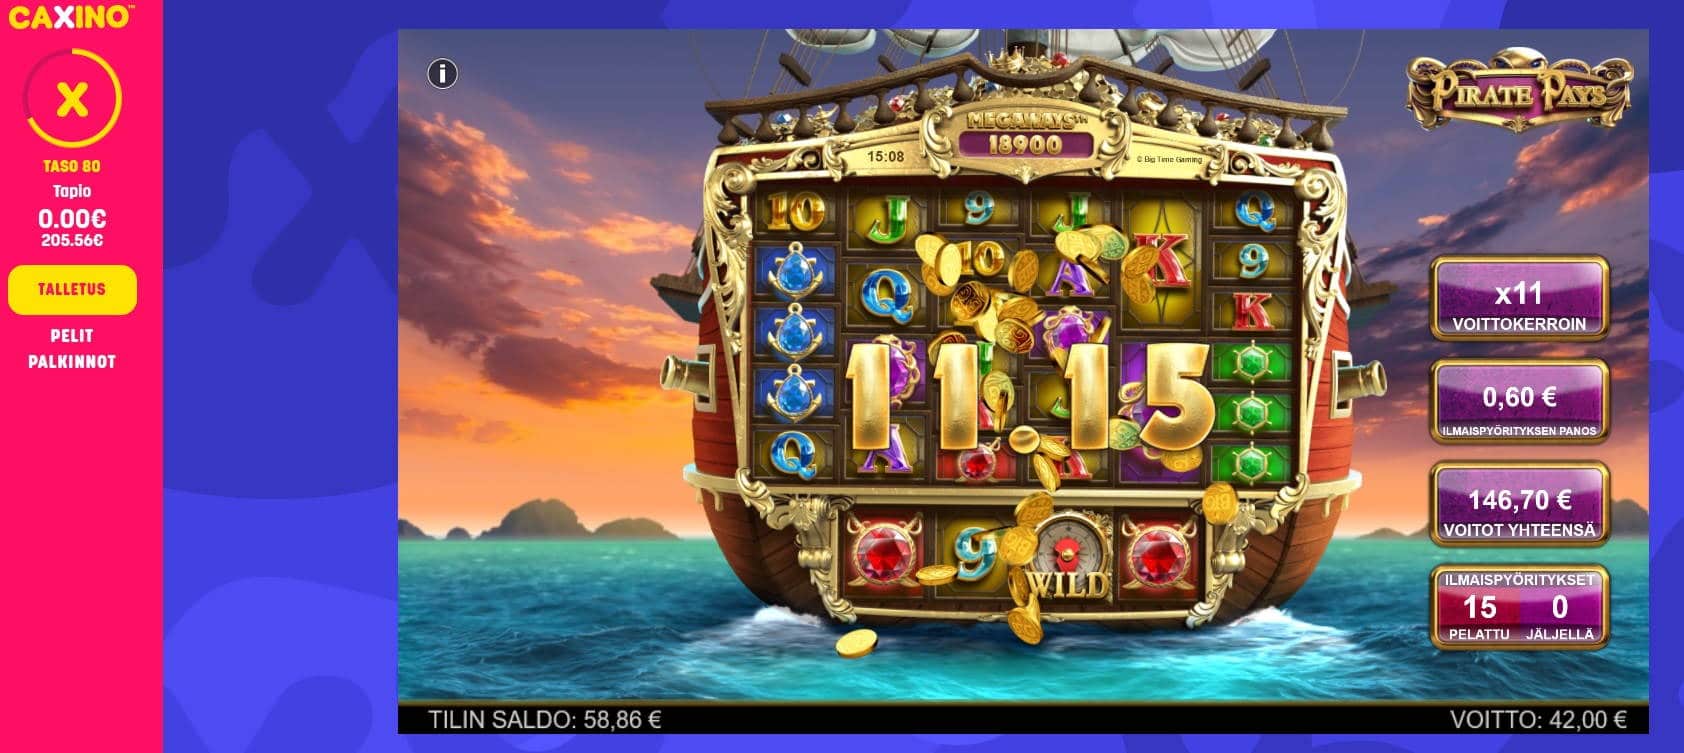 Pirate Pays Casino win picture by MrMork 22.6.2022 146.70e 245X Caxino